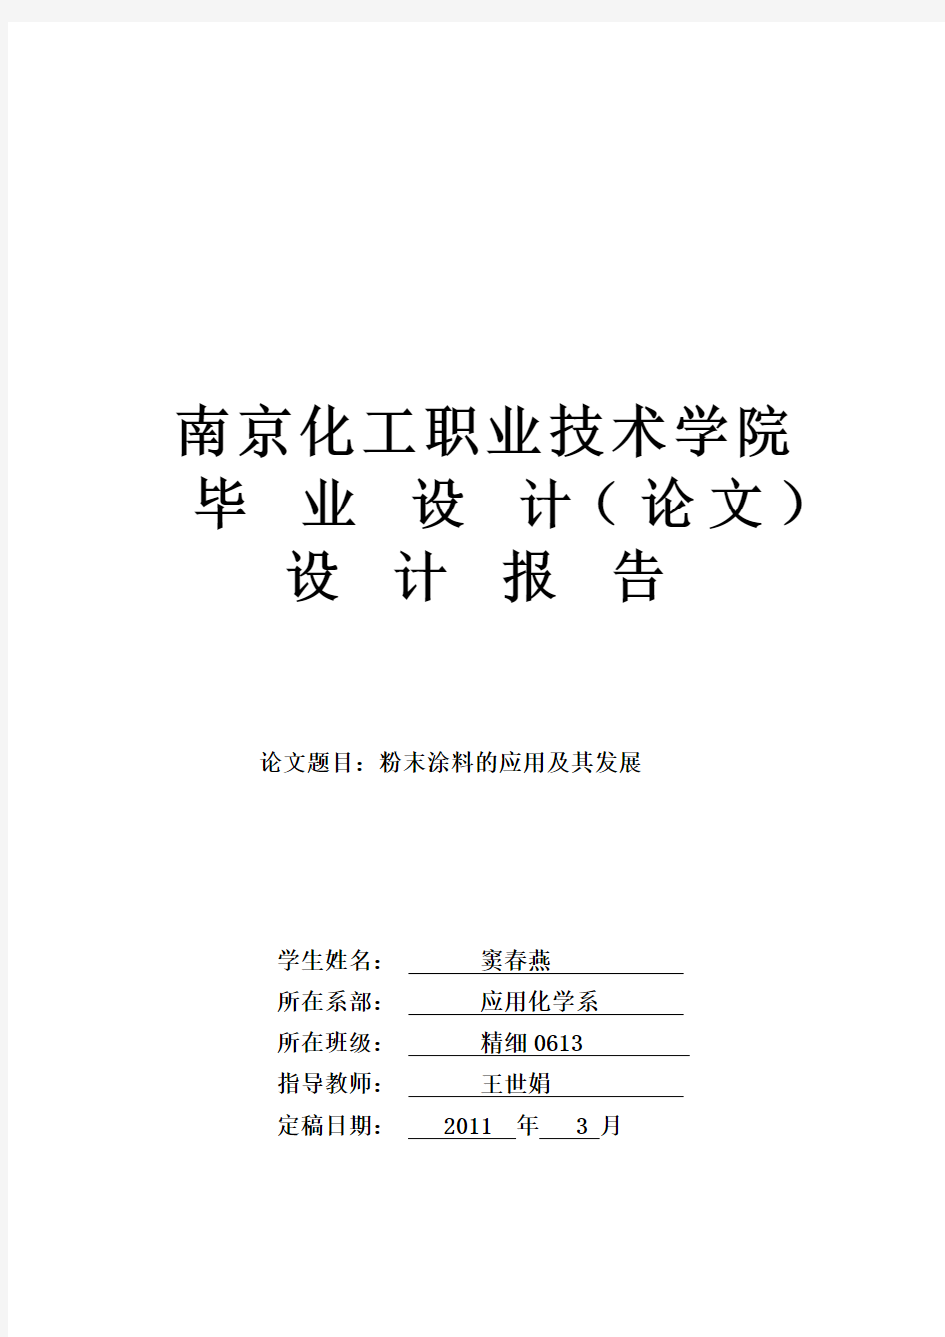 南京化工职业技术学院毕业设计论文(修改版)